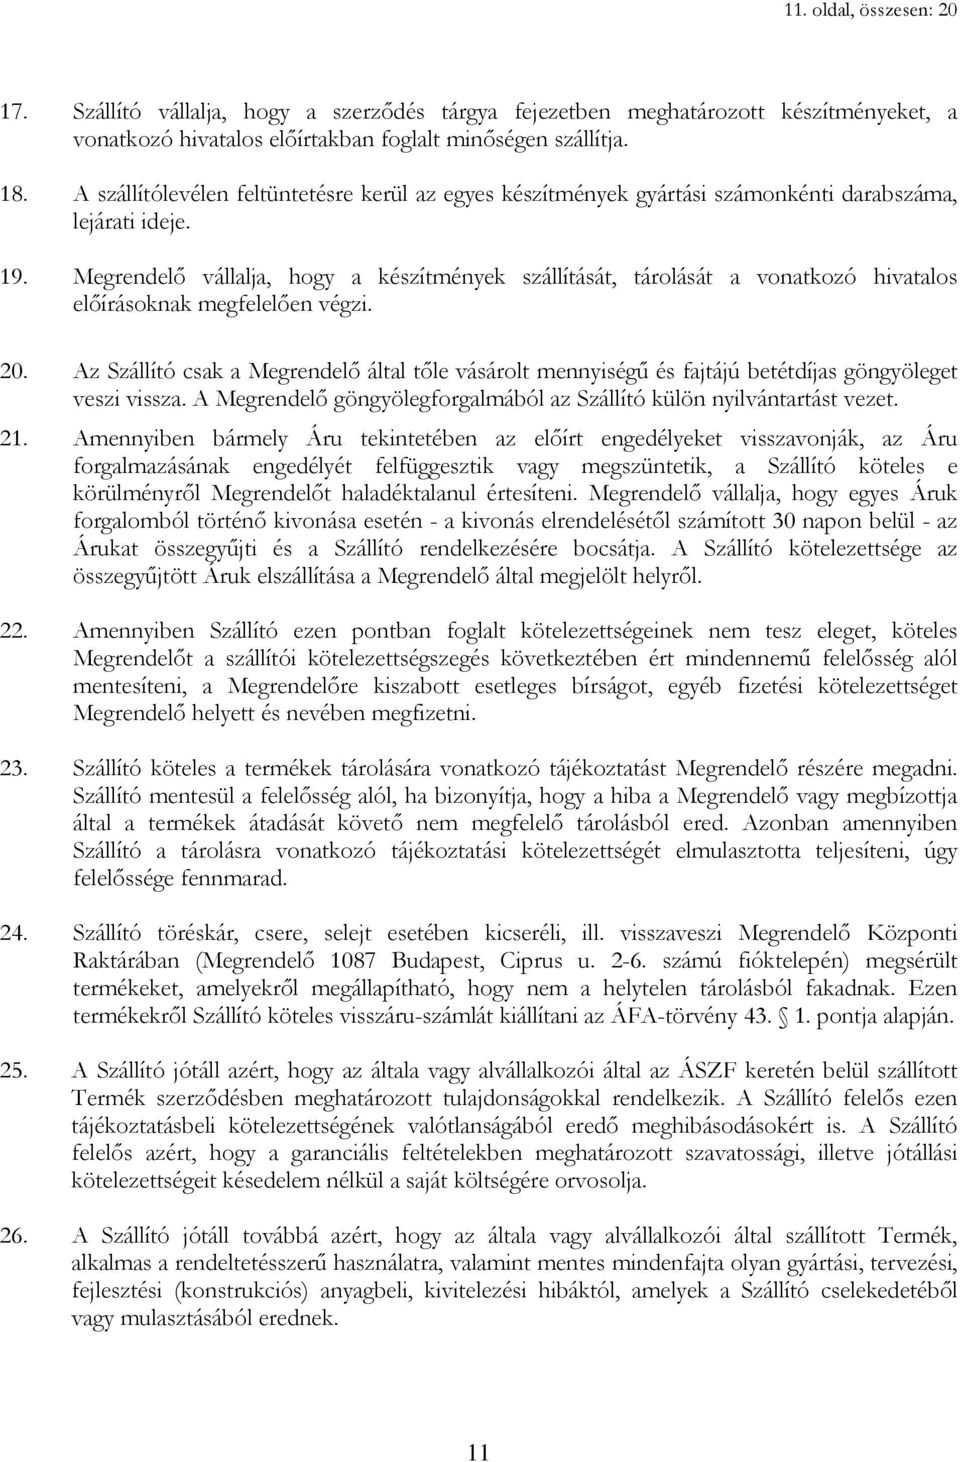 Megrendelı vállalja, hogy a készítmények szállítását, tárolását a vonatkozó hivatalos elıírásoknak megfelelıen végzi. 20.